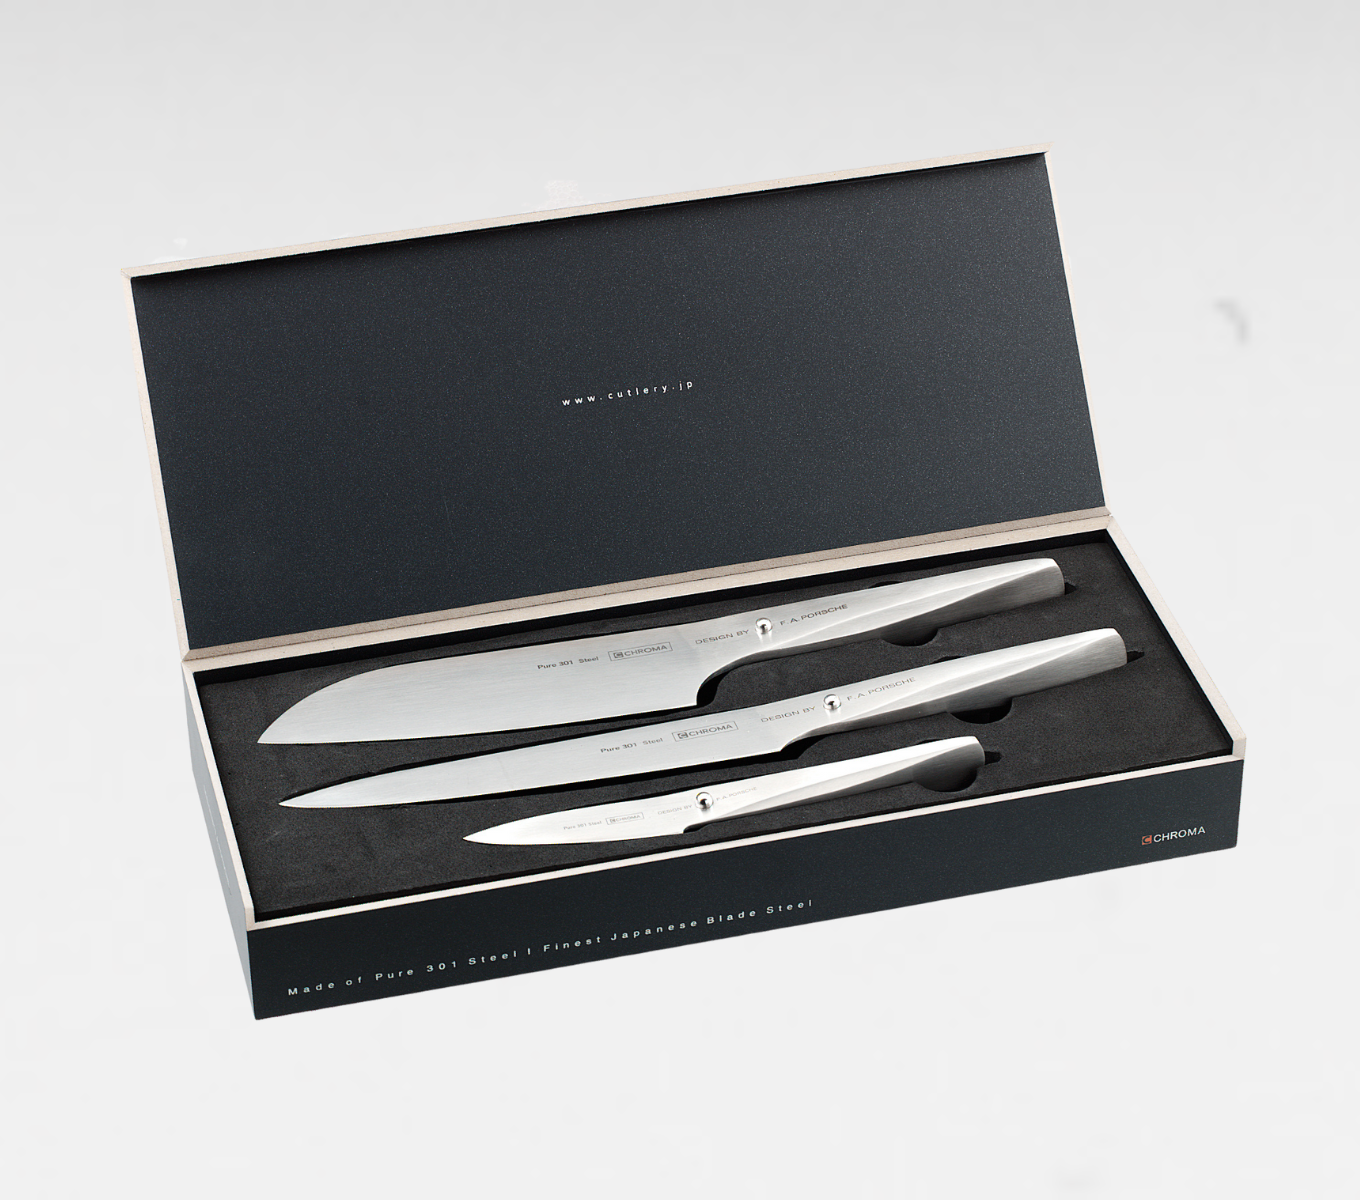 Das 3-teilige Messerset zum tranchieren, schälen und schneiden. Das Startset ist Ideale für Ihre neue Küche.